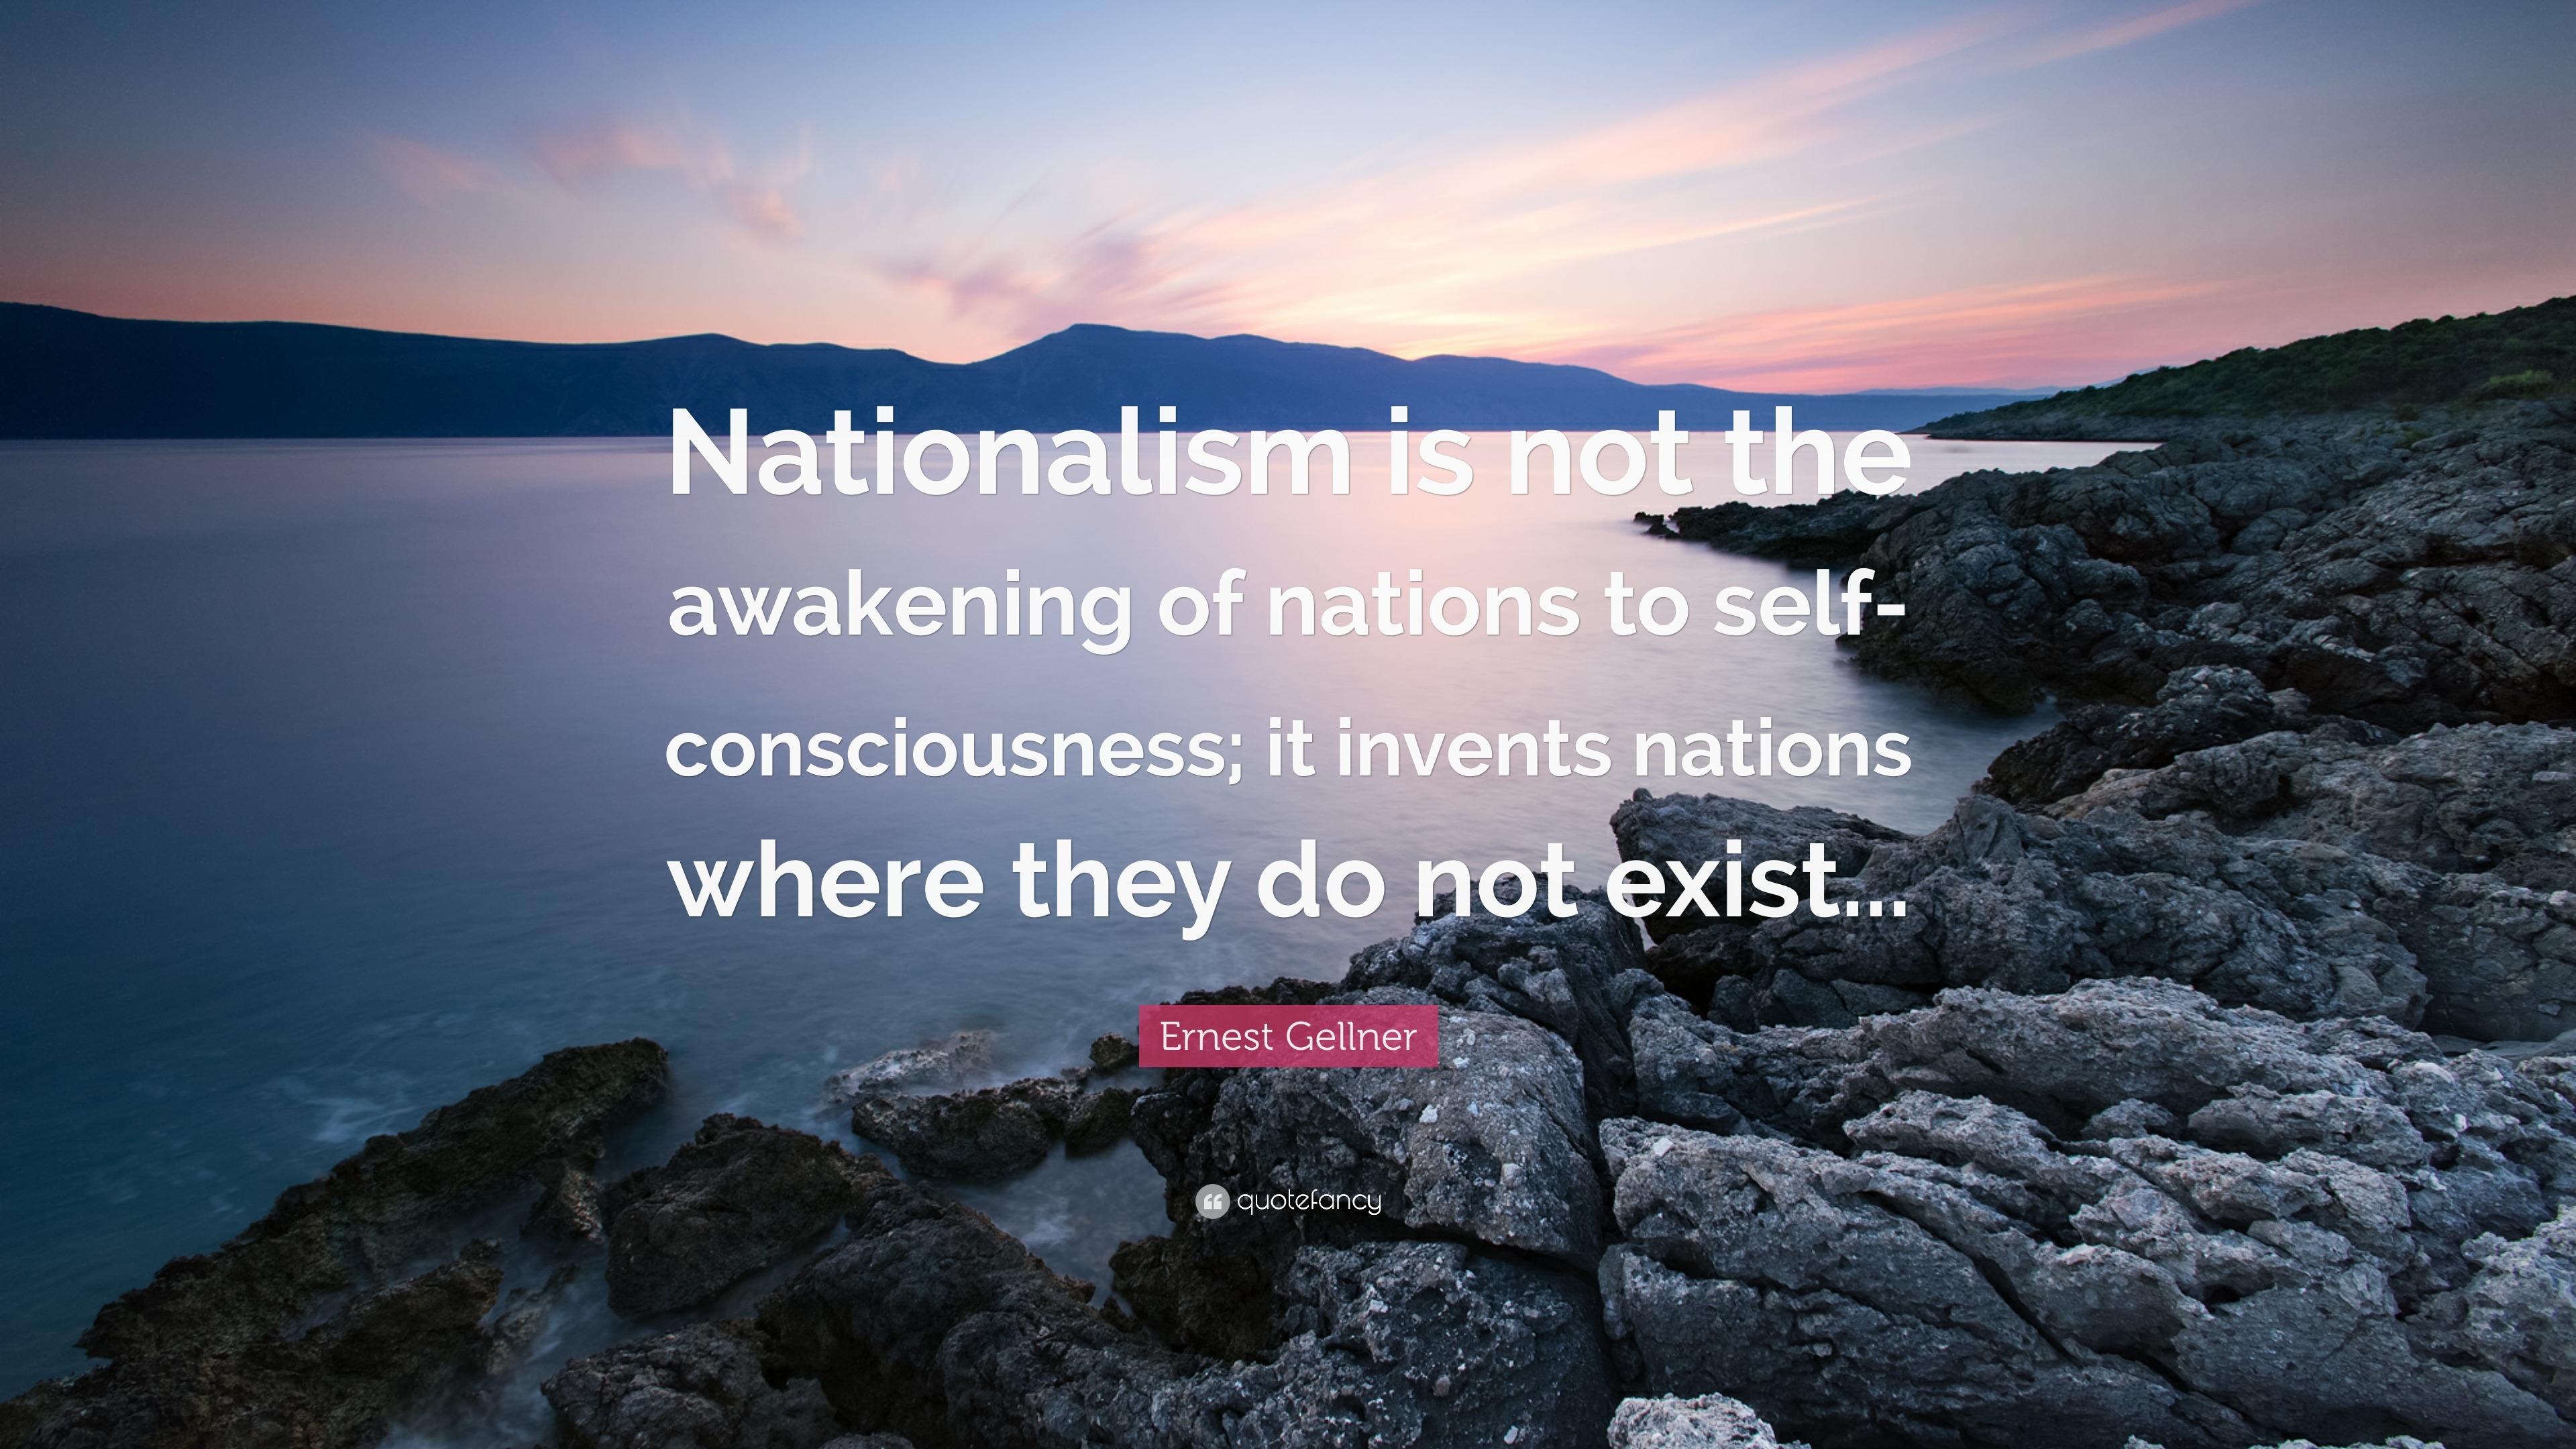 gellner ernest 1983 nations and nationalism